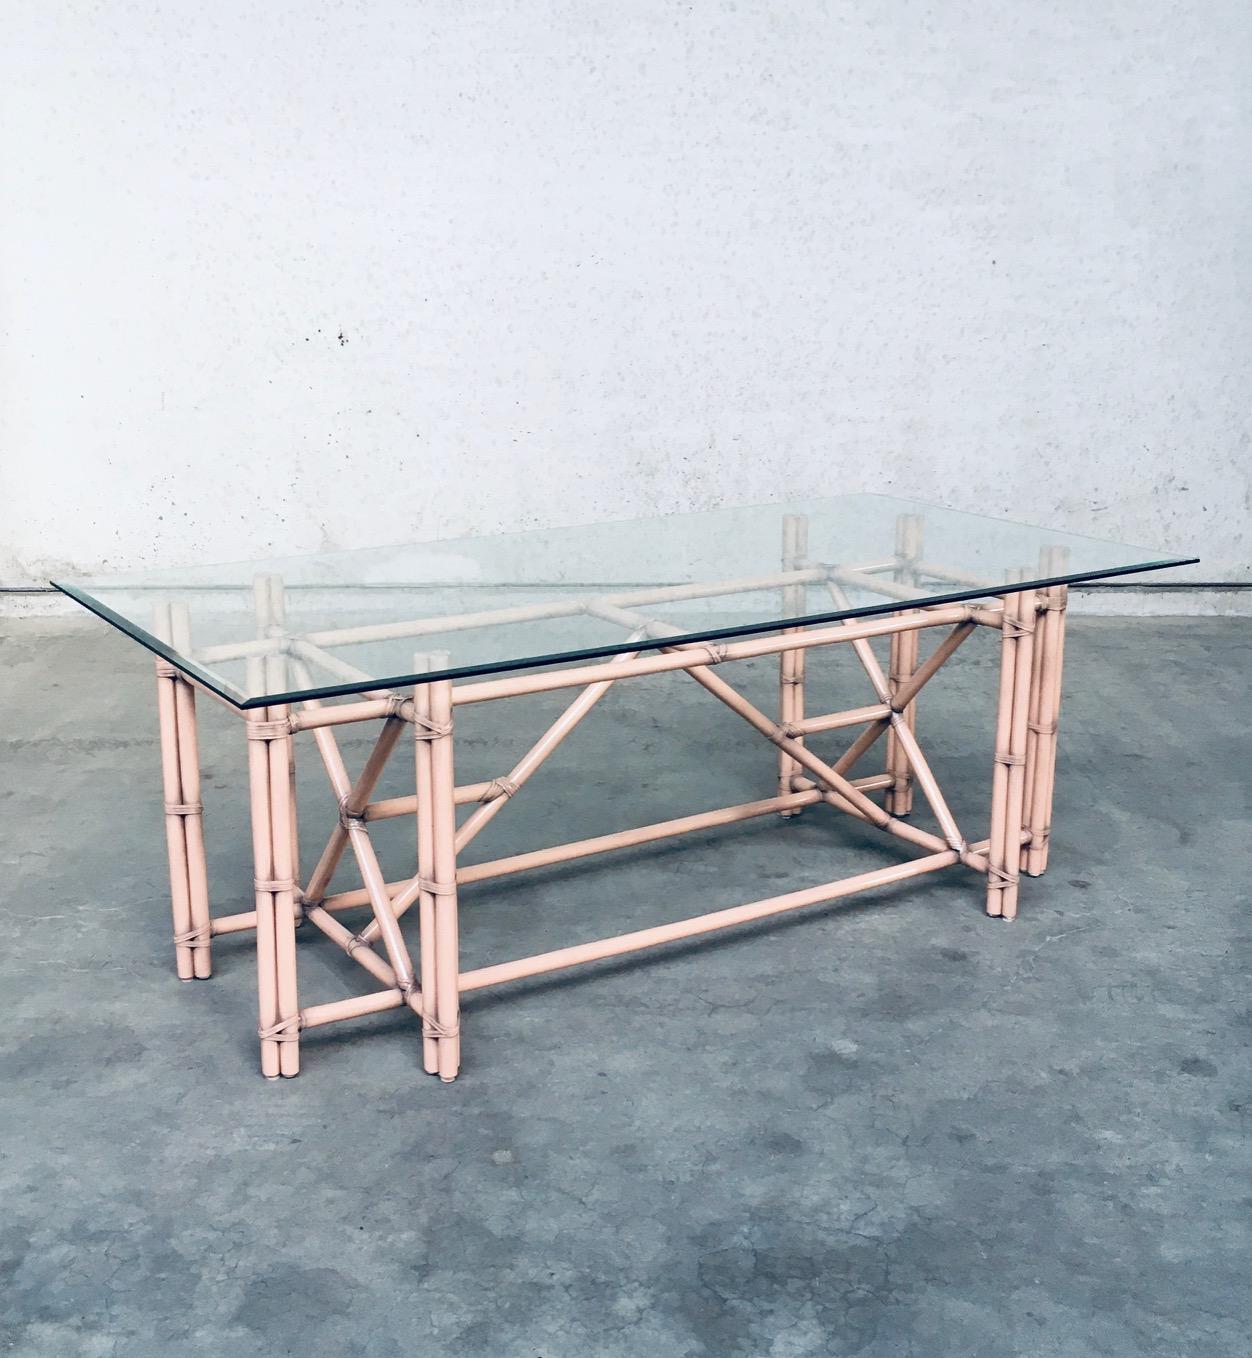 Vintage Organic Monumental Modern Design Faux Bamboo with Glass Top Large Dining Table im Stil von McGuire. Hergestellt in den 1980er Jahren, wahrscheinlich in Italien. Gestell aus Buchenholz mit Rattaneinfassungen in lachsrosa Farbe. Abgeschrägte